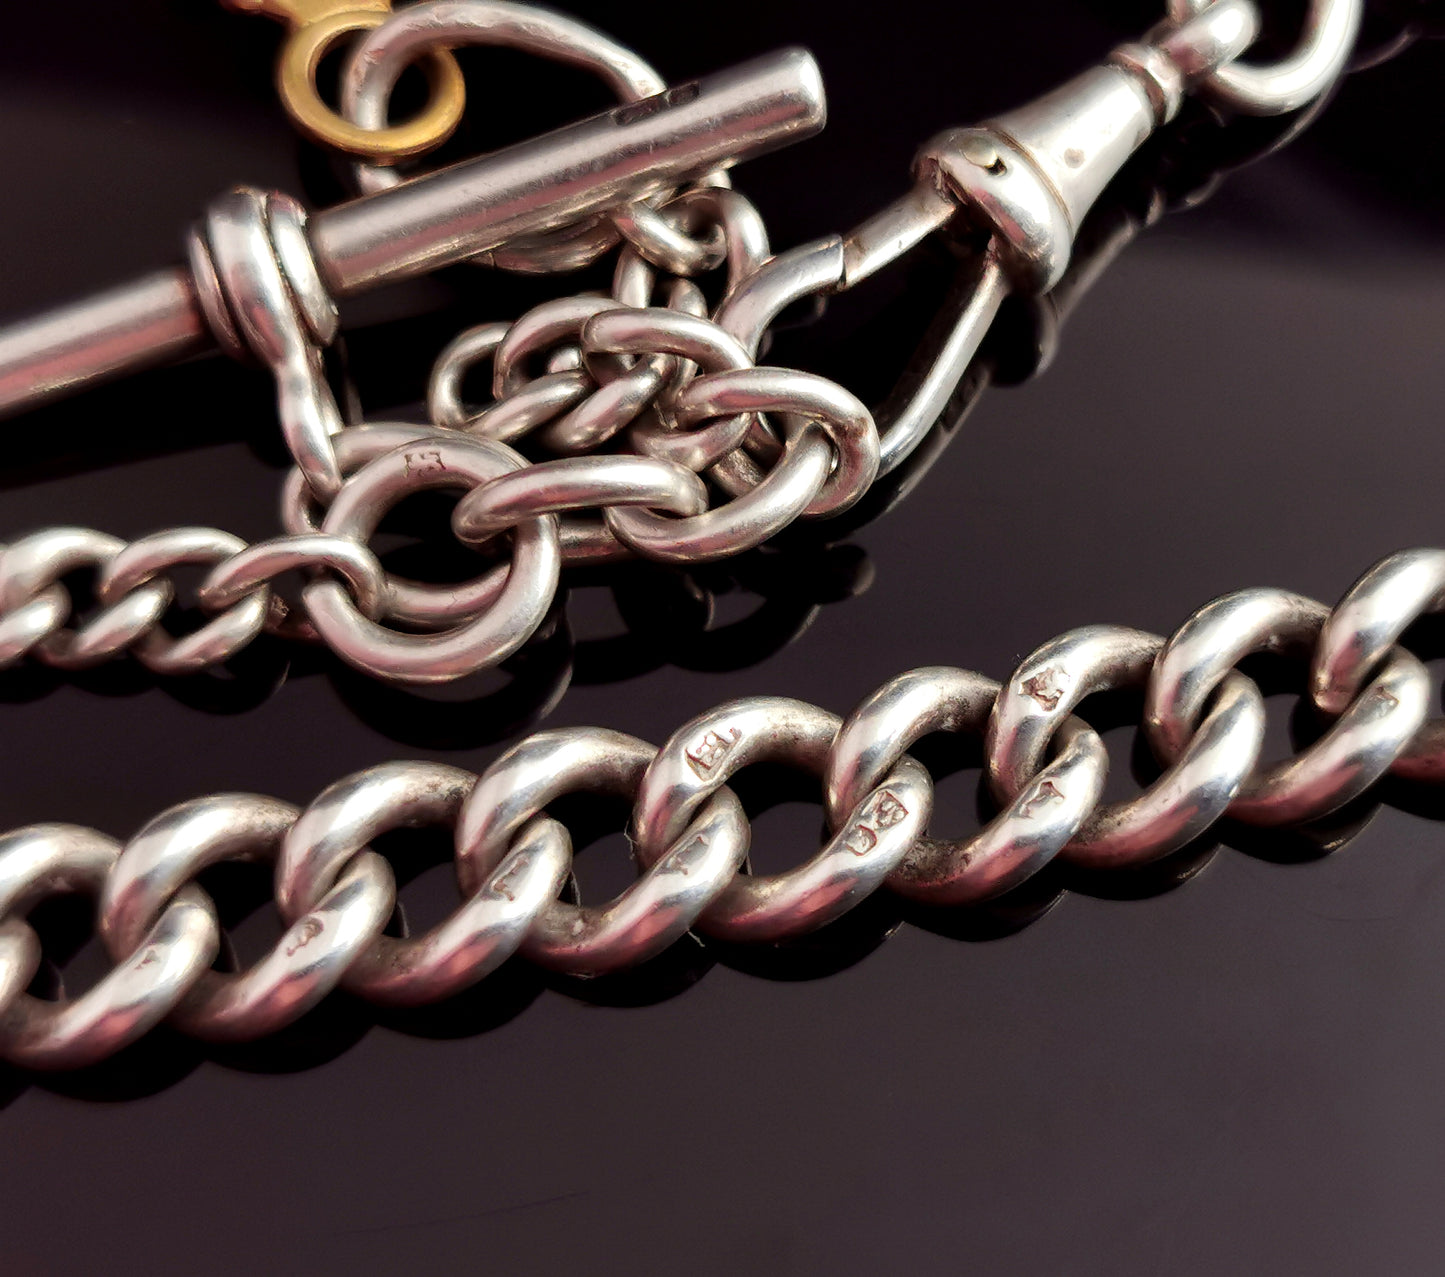 Antique Edwardian silver Albert chain, watch chain